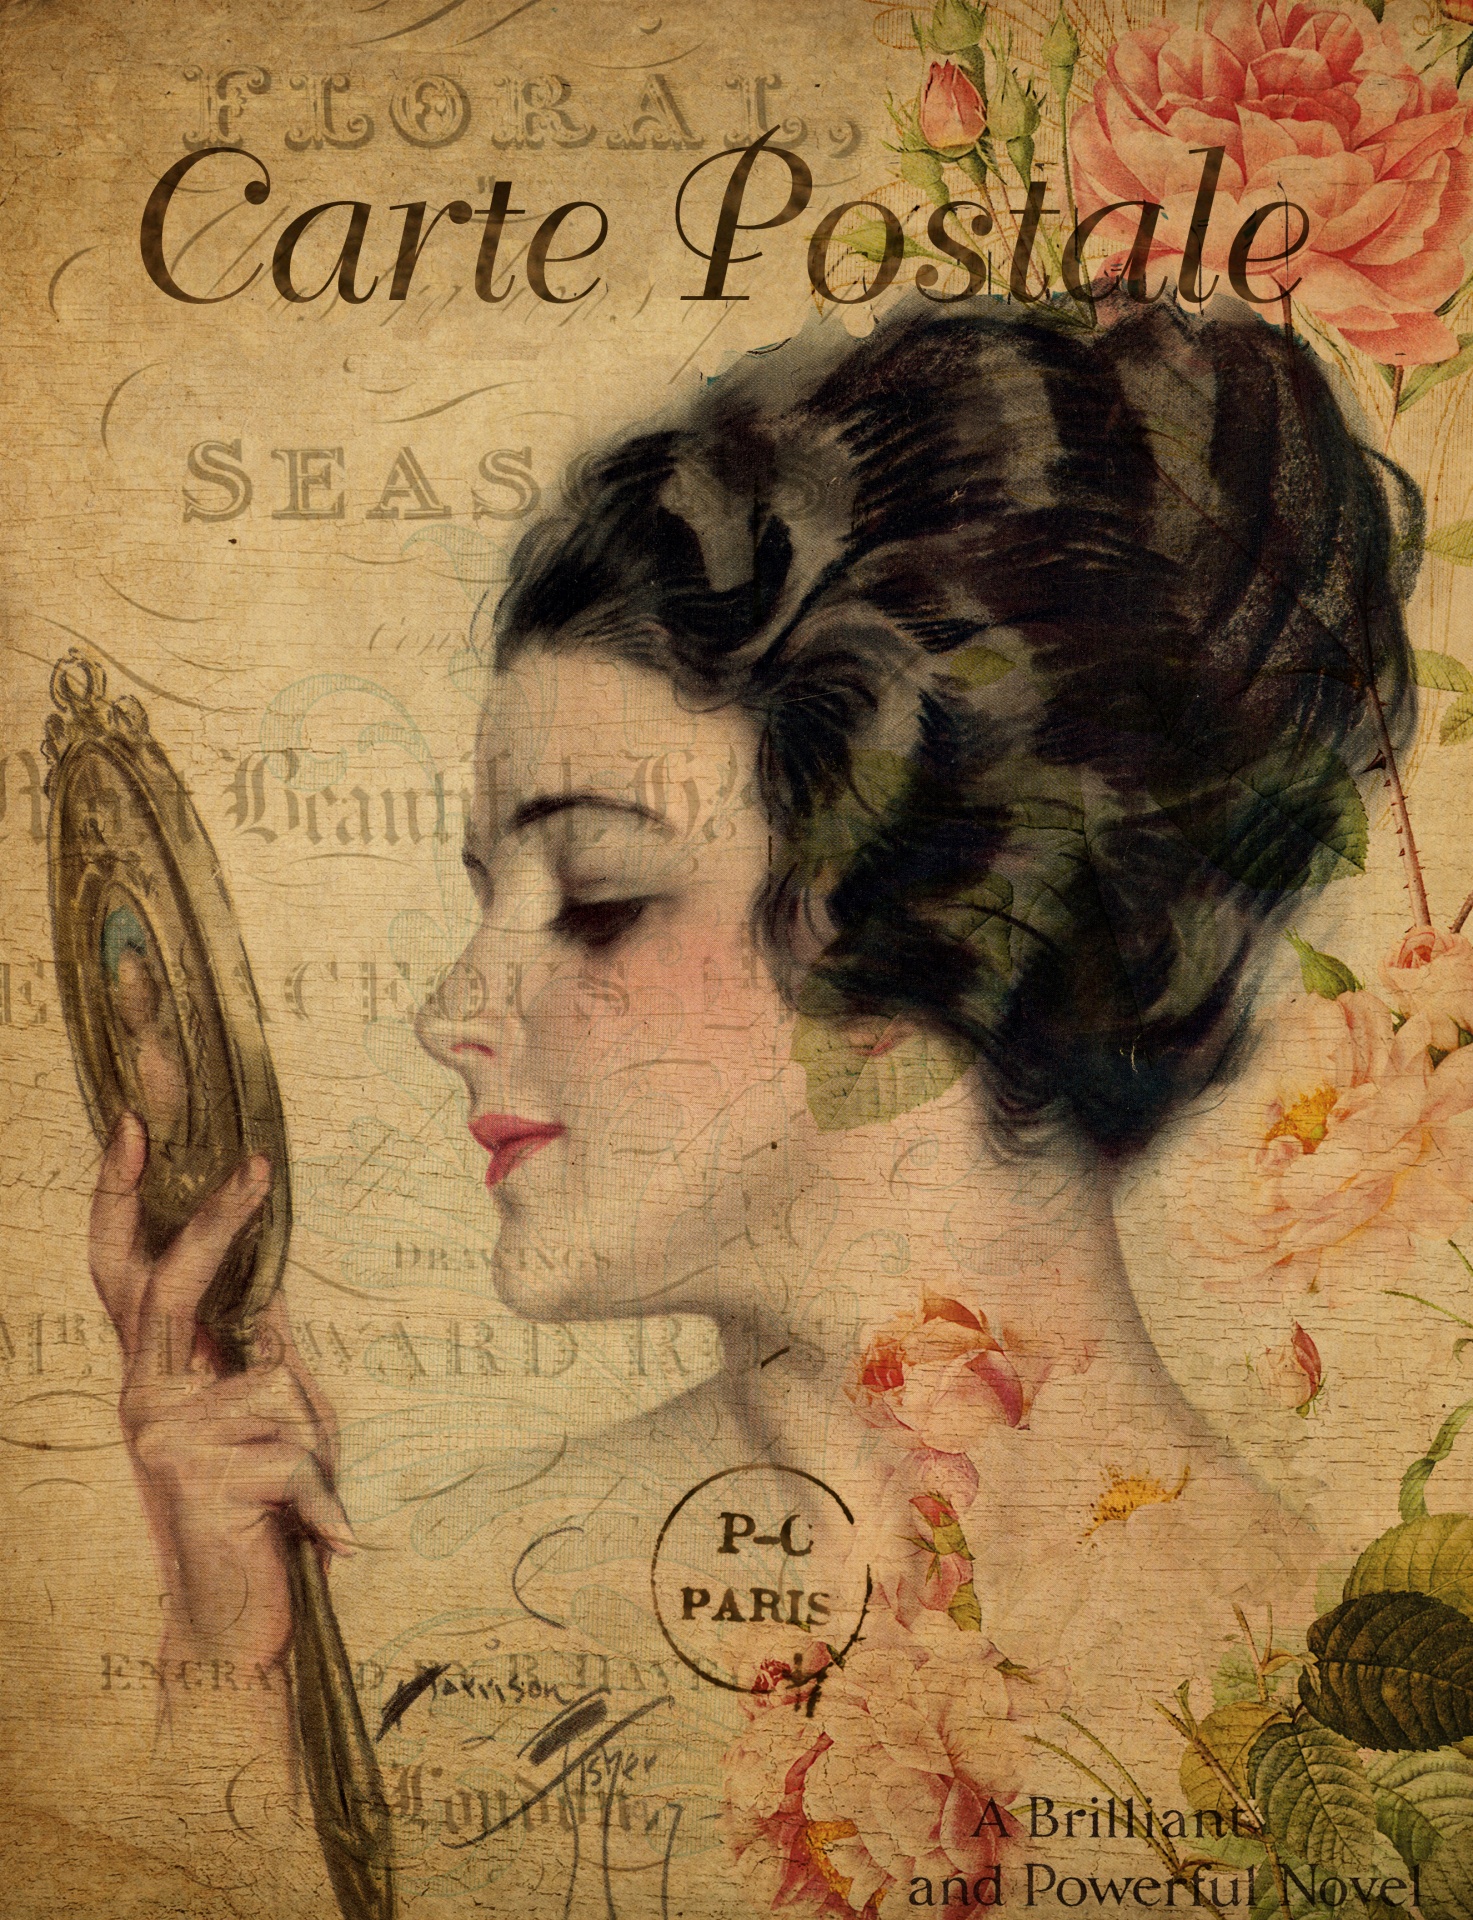 Woman Vintage Floral Postcard Free Stock Photo - Public Domain Pictures